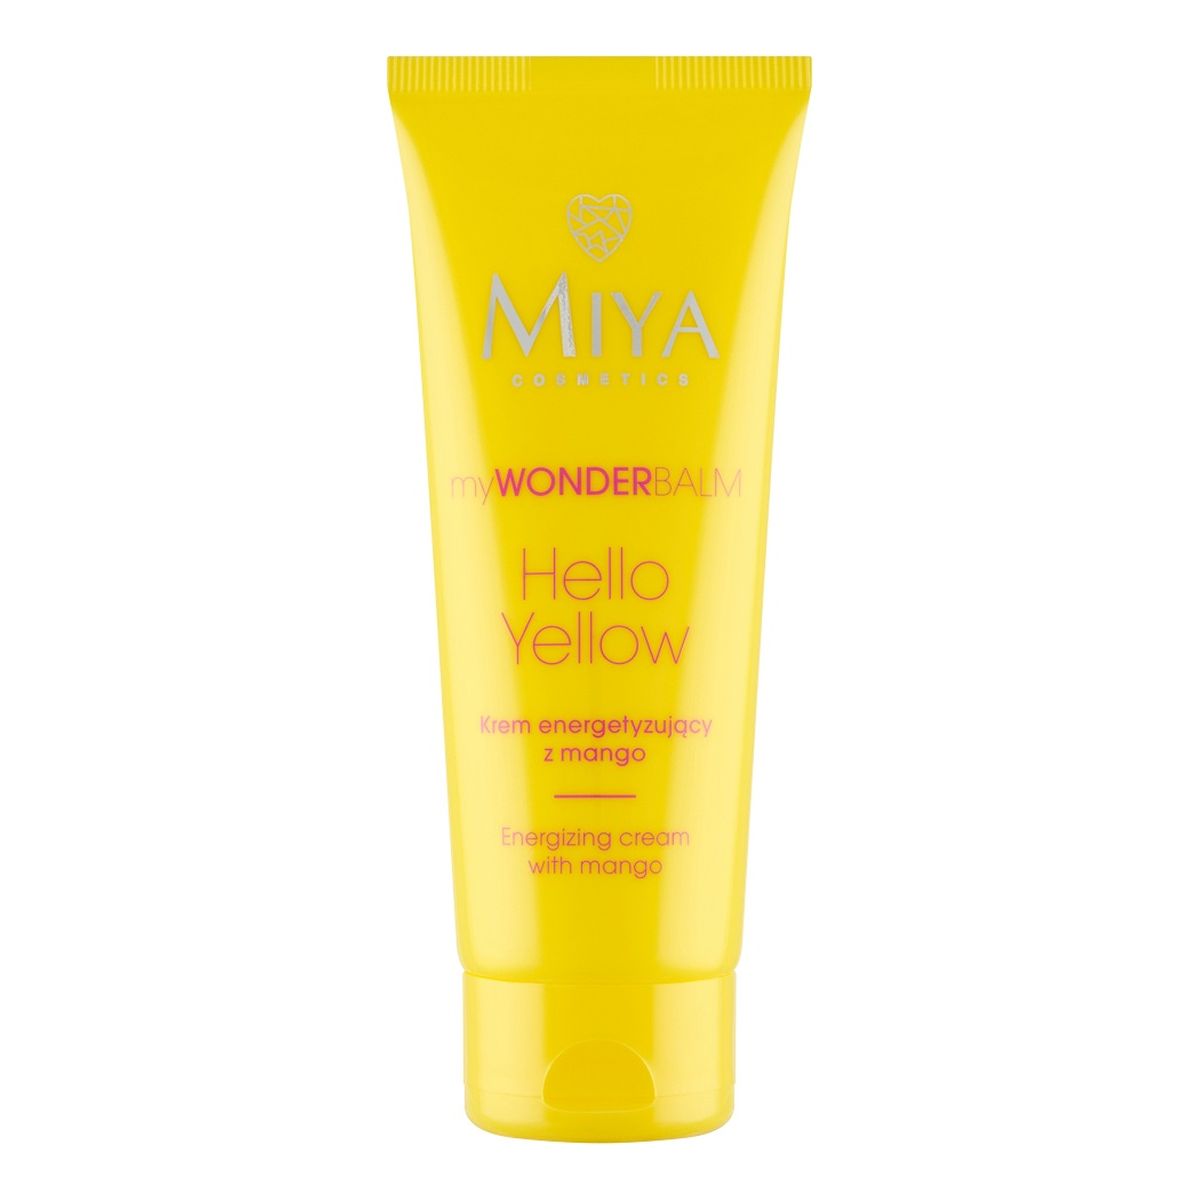 Miya Cosmetics myWONDERBALM Hello Yellow Krem energetyzujący z mango 75ml